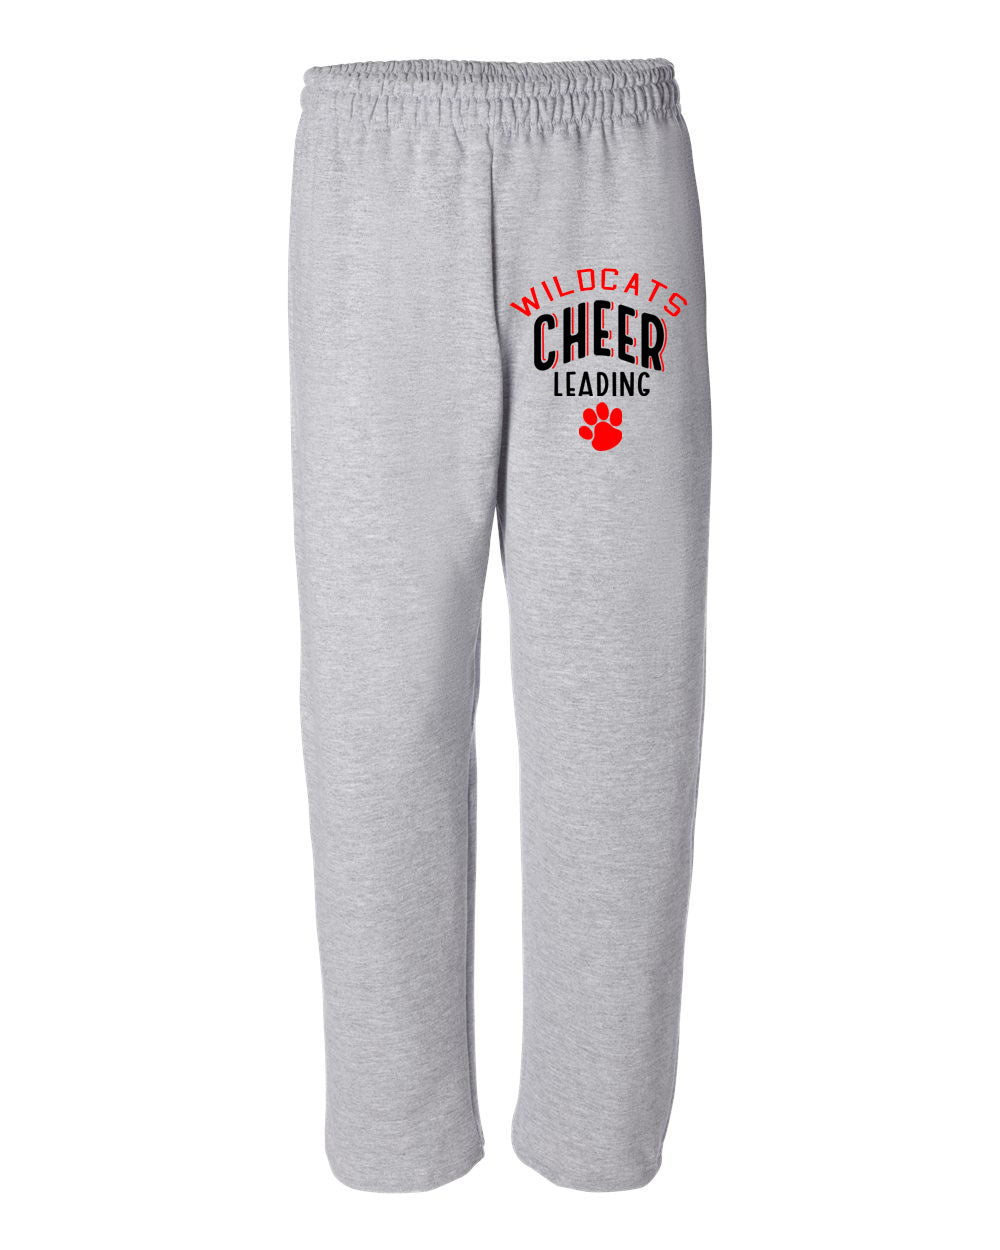 Wildcats Cheer Design 5 Open Bottom Sweatpants